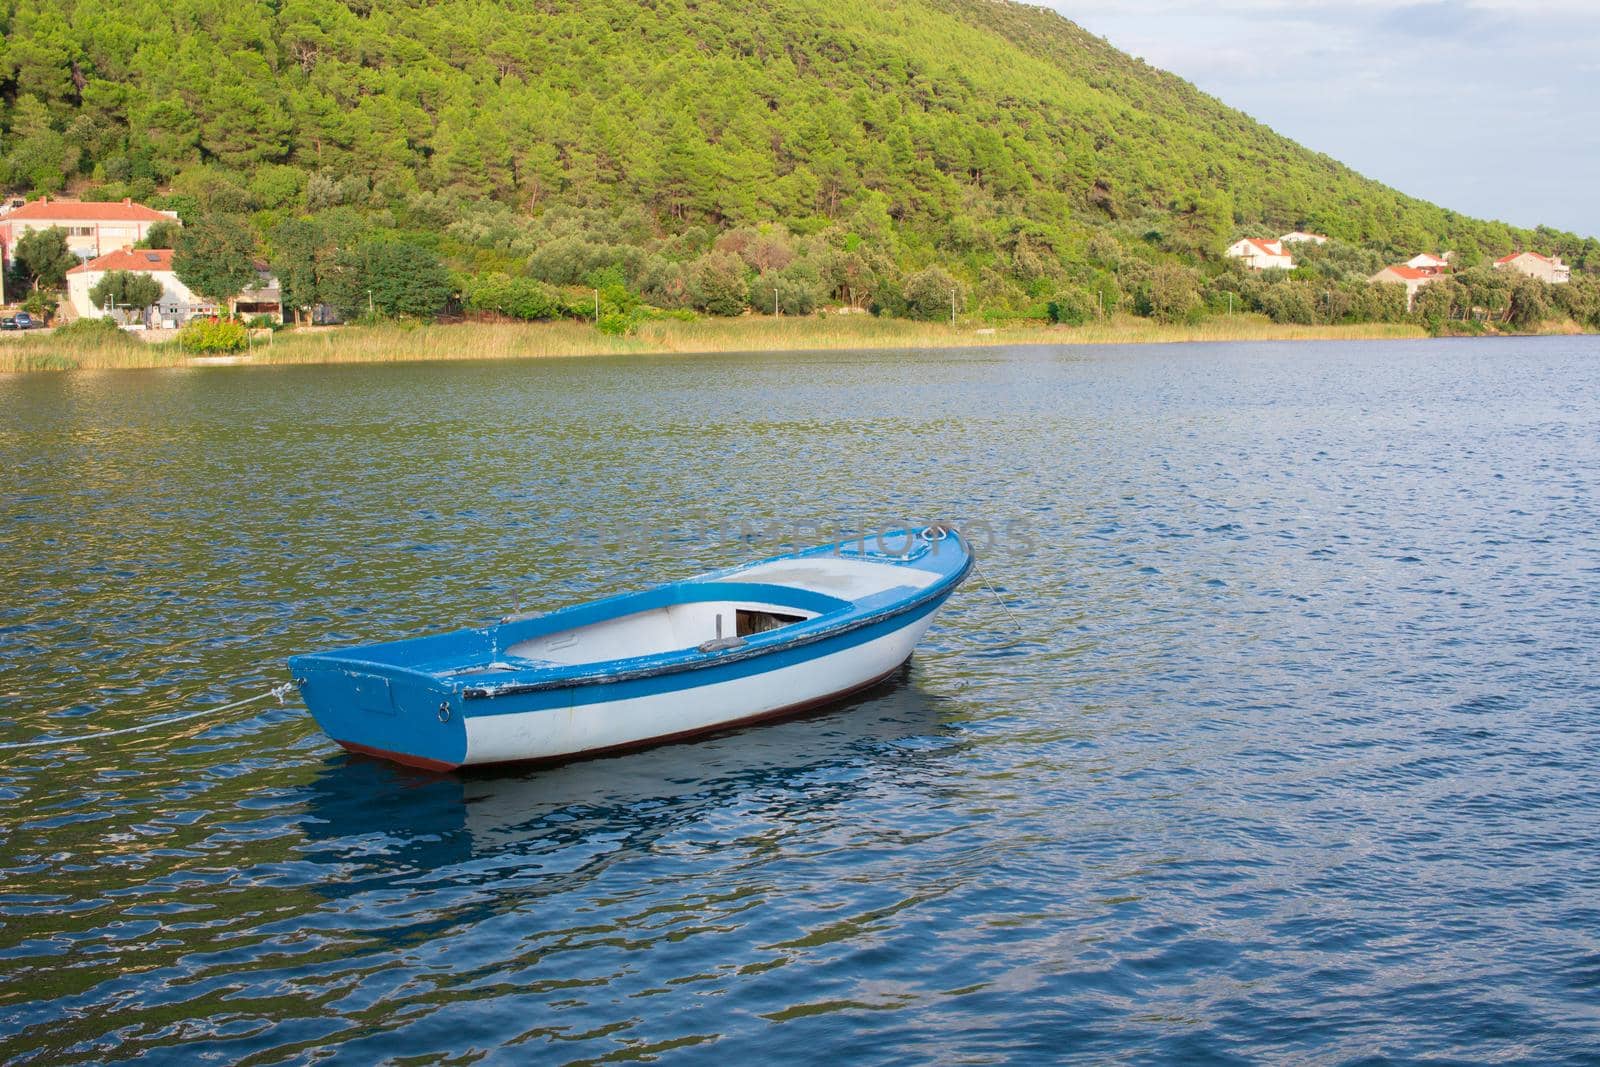 Small fishing boat in Adriatic sea bay tied to shore by VeraVerano